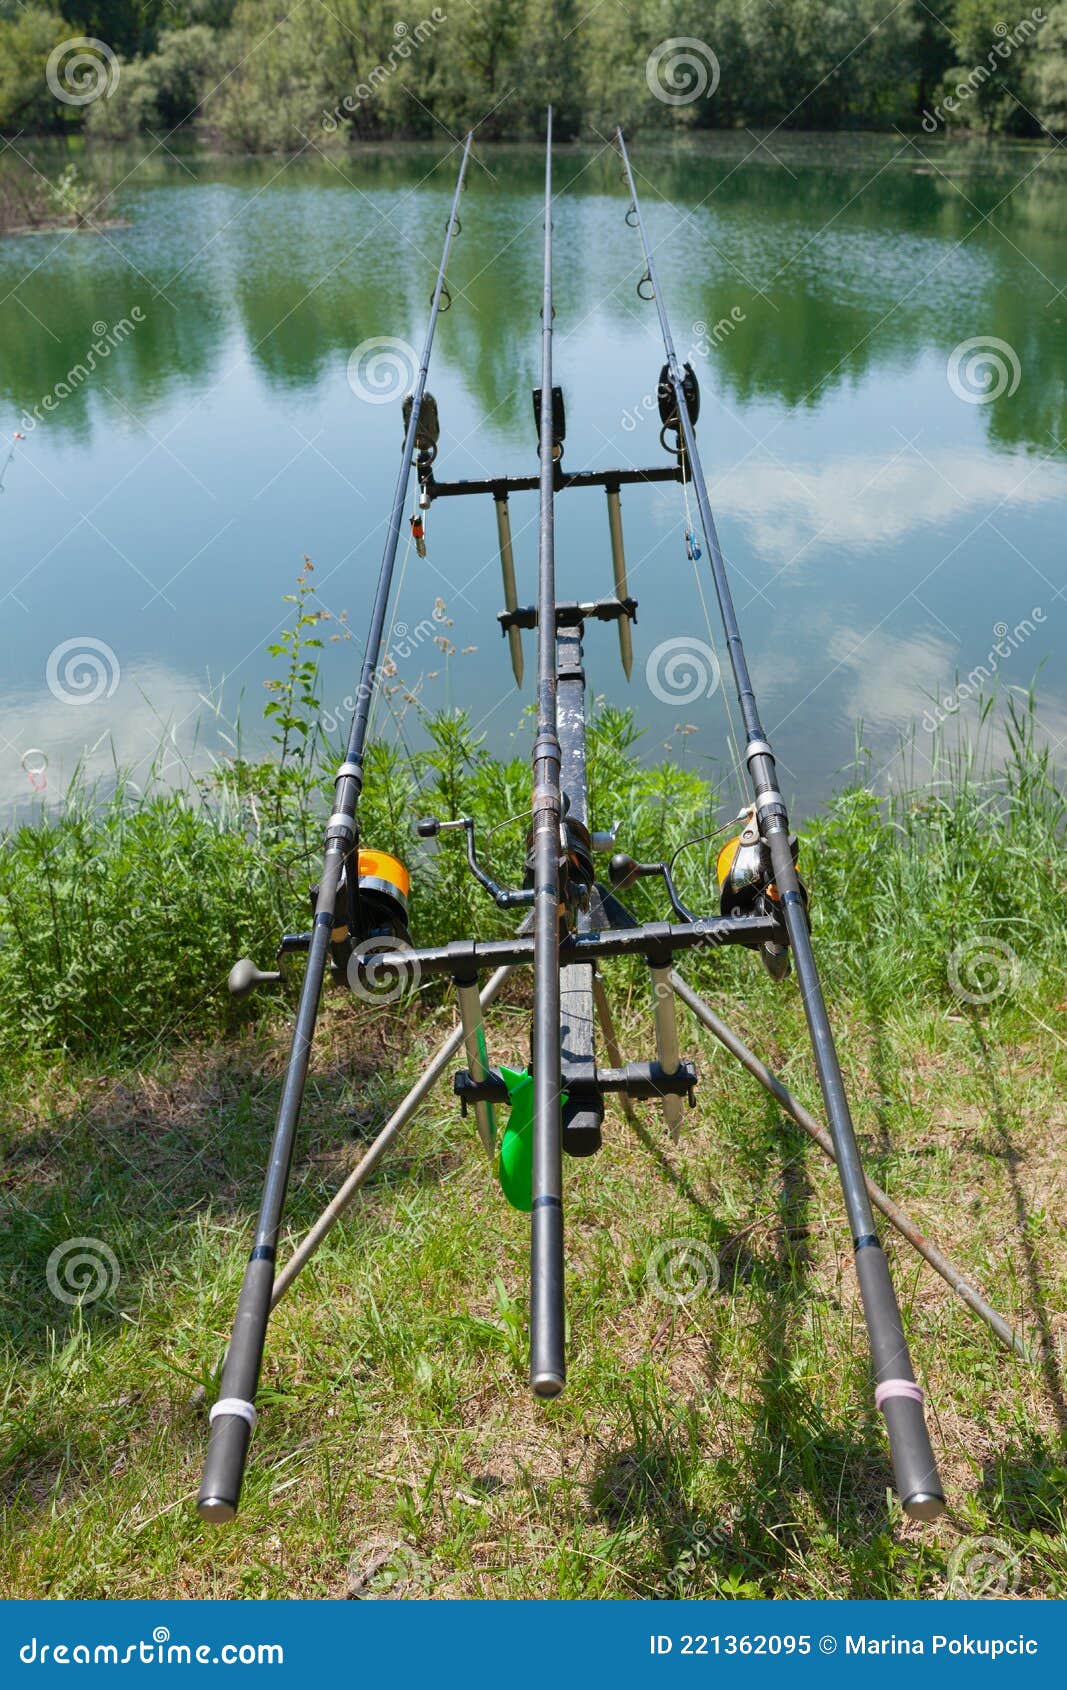 https://thumbs.dreamstime.com/z/varas-de-pesca-en-un-puesto-junto-al-lago-listas-para-pescar-d%C3%ADa-soleado-221362095.jpg